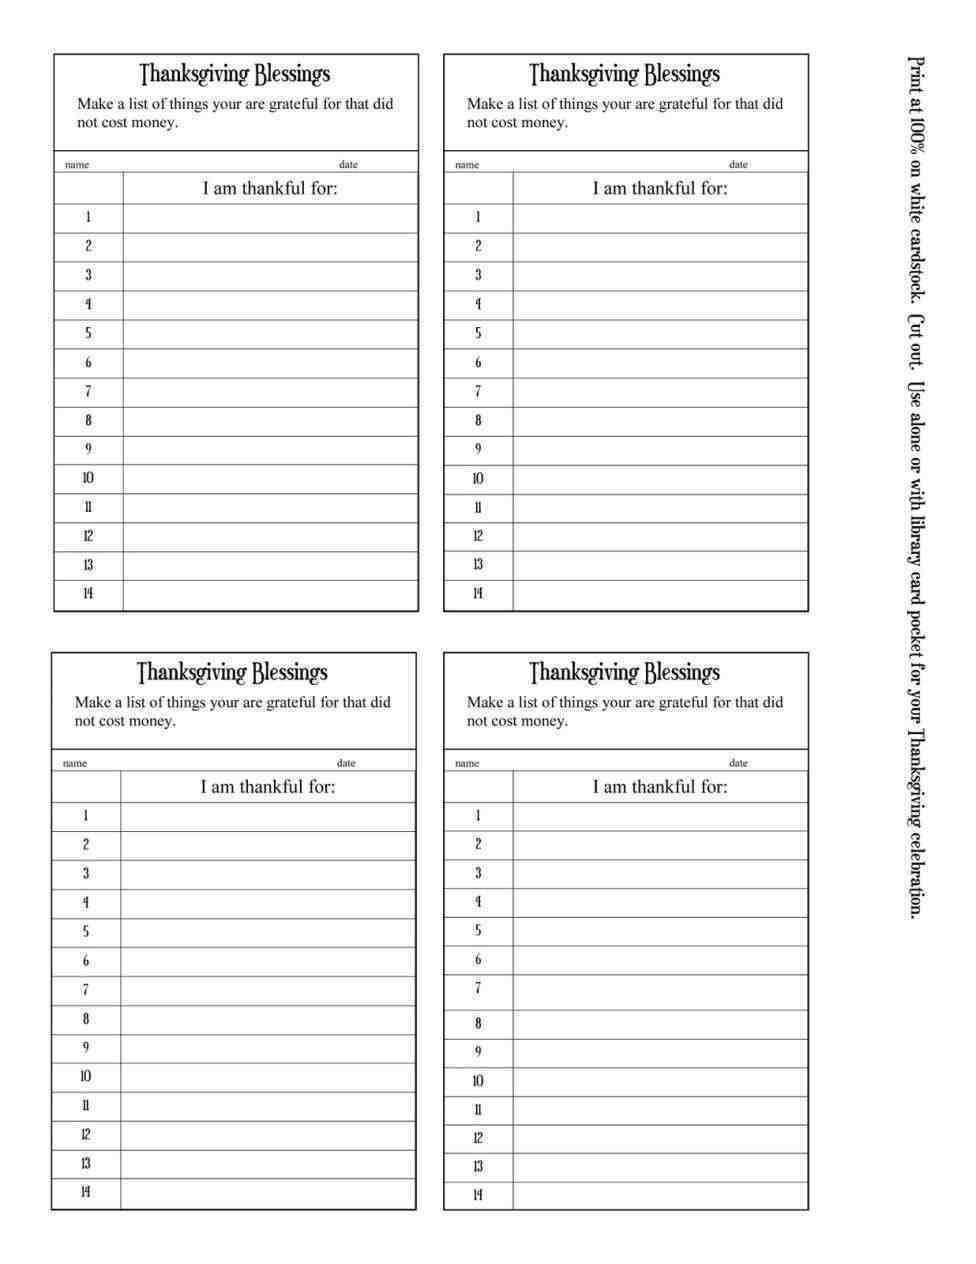 Baseball Lineup Cards Printable | Template Business Psd Inside Baseball Lineup Card Template